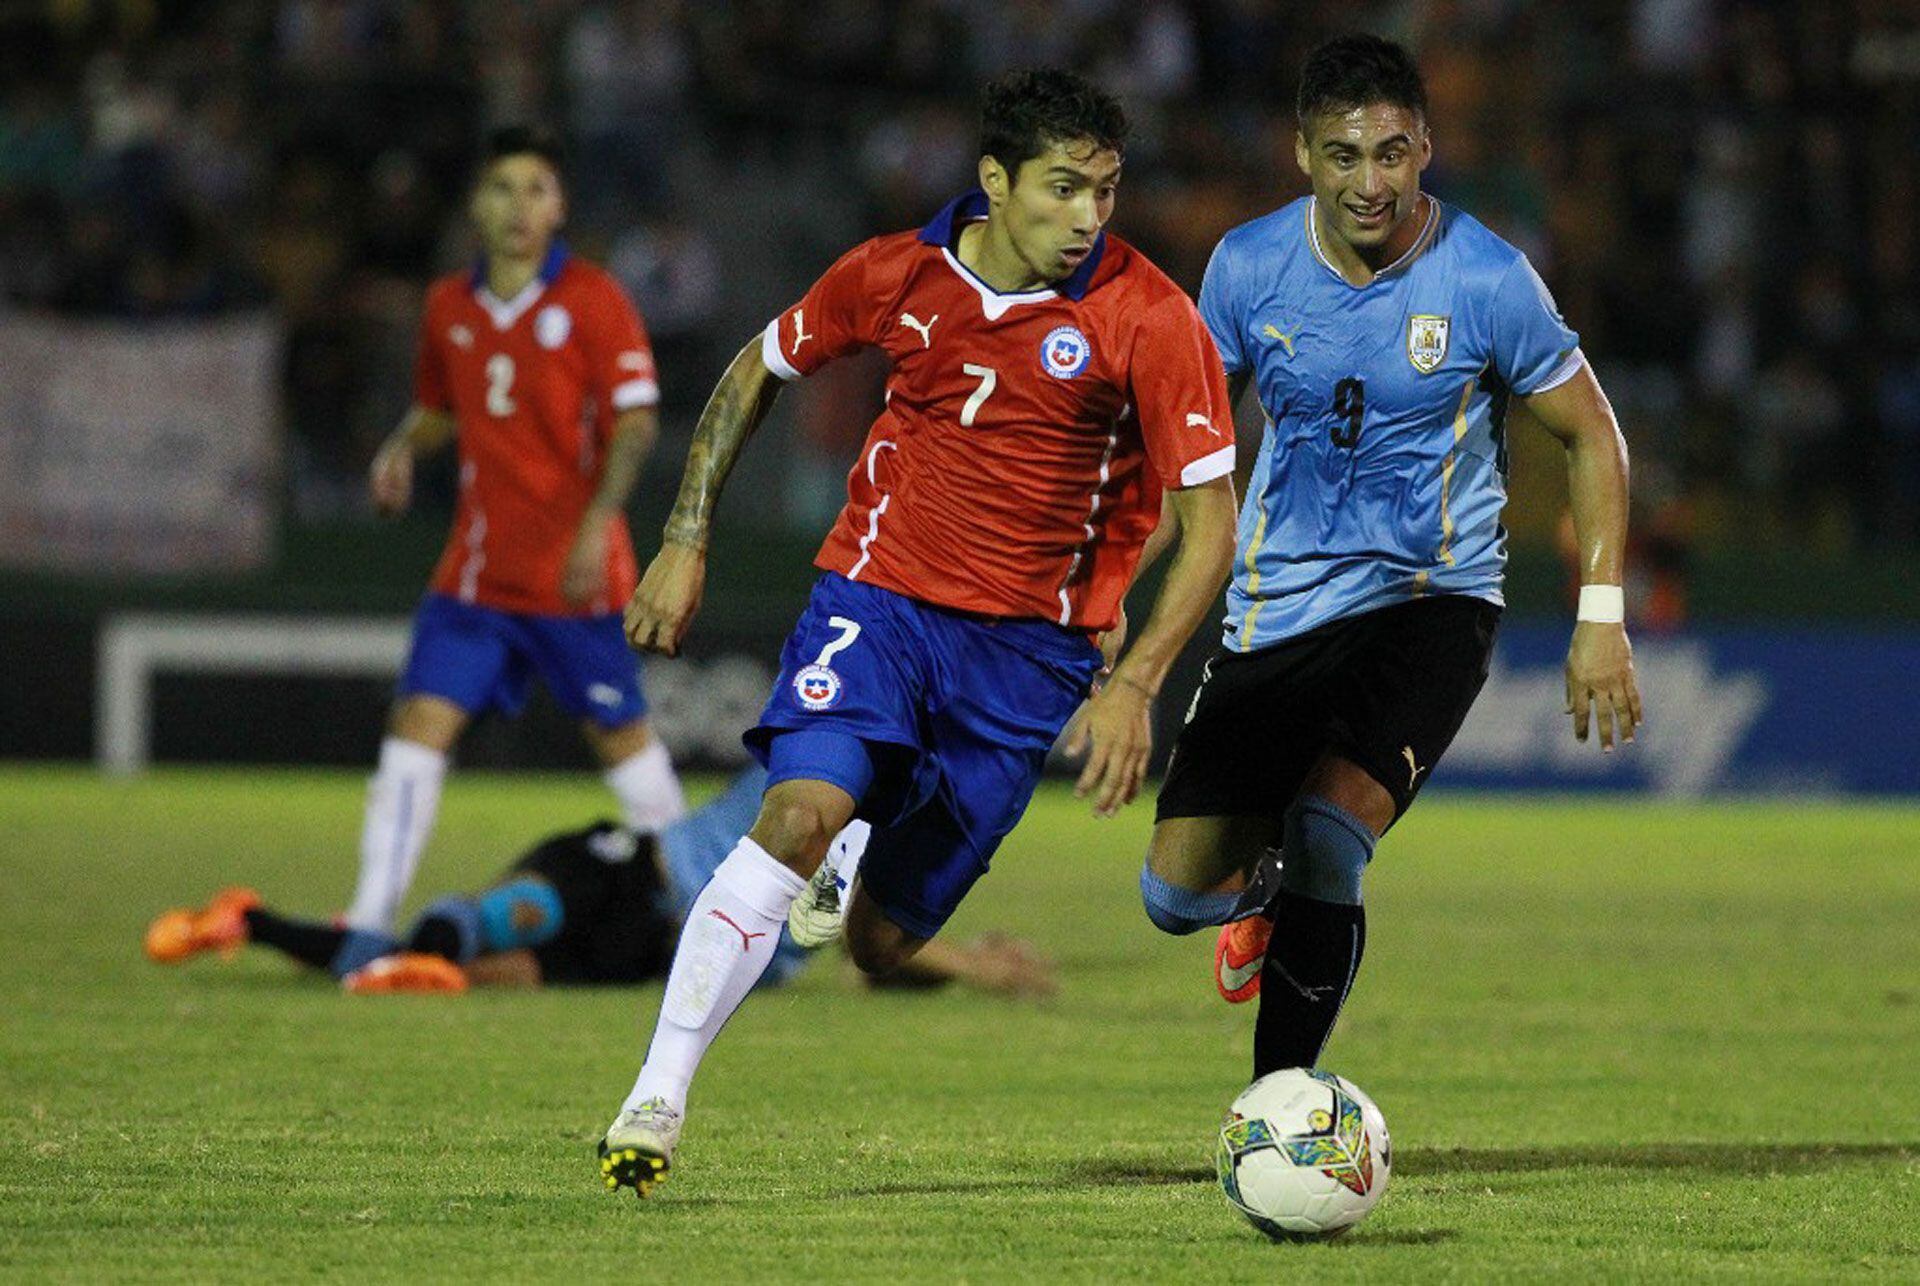 Luciano Cabral con la camiseta de la selección de Chile sub 20. - créditos: Agencias